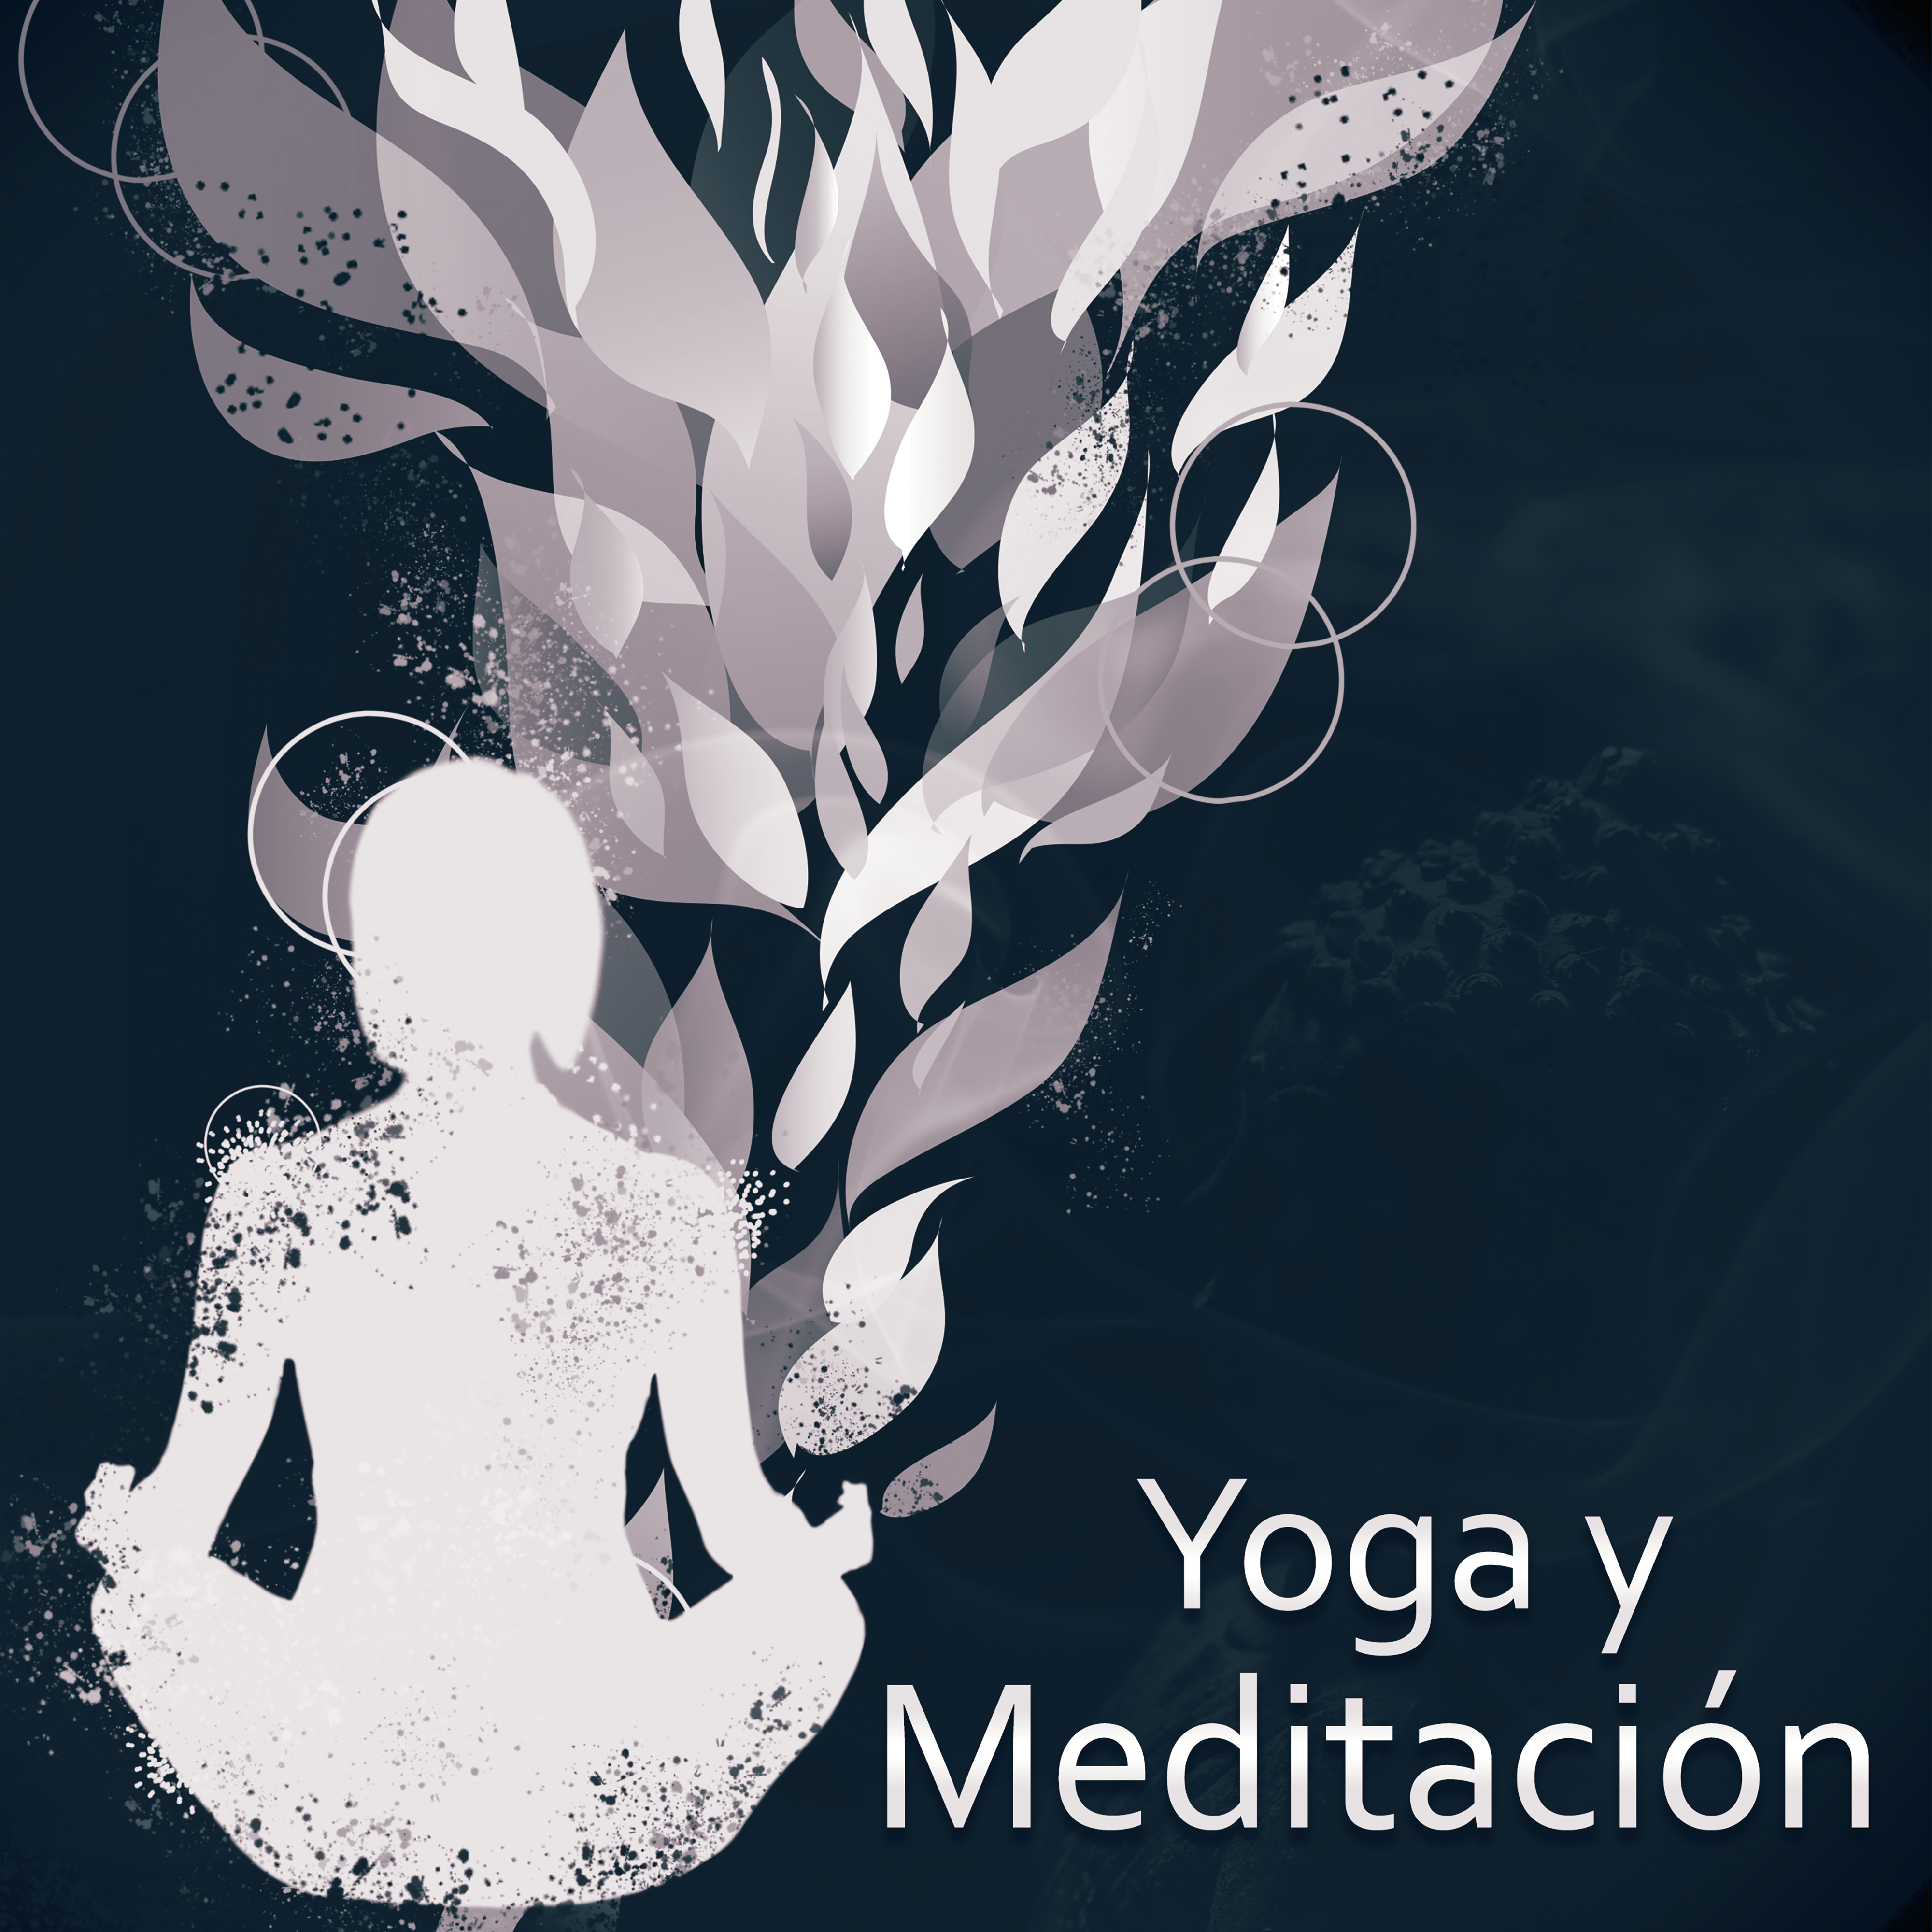 Yoga y Meditacio n  Mu sica para la Meditacio n, el Yoga, Entrenamiento de la Mente, la Mu sica de Relajacio n,  los Sonidos Suaves de la Naturaleza